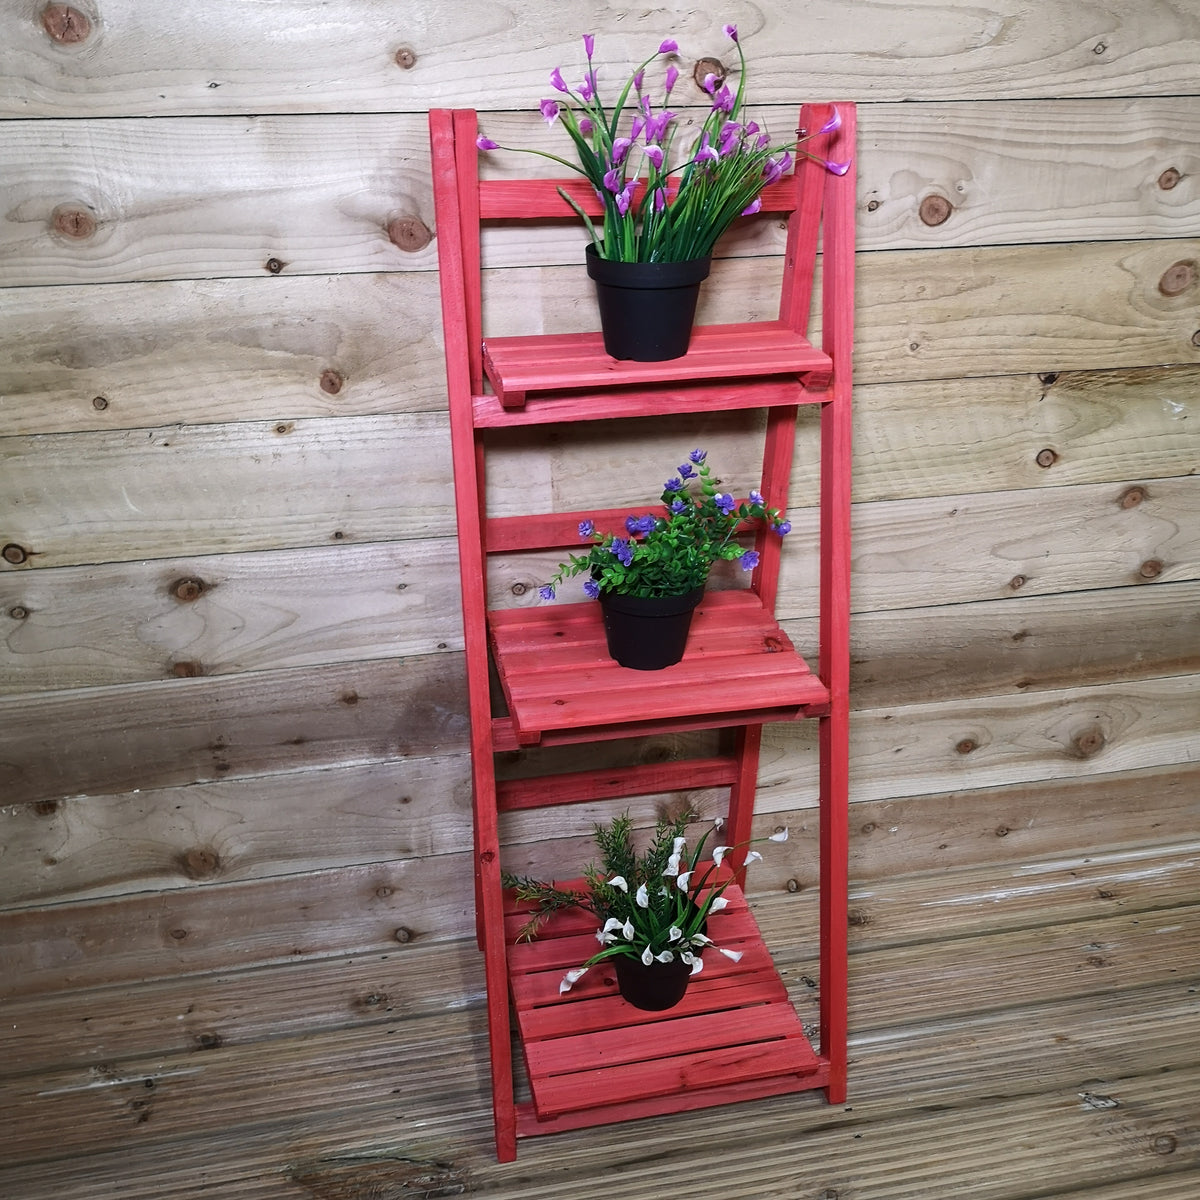 Outdoor Wooden Garden 3 Tier / Shelf Display Planter for Plants, Flowers, Herbs